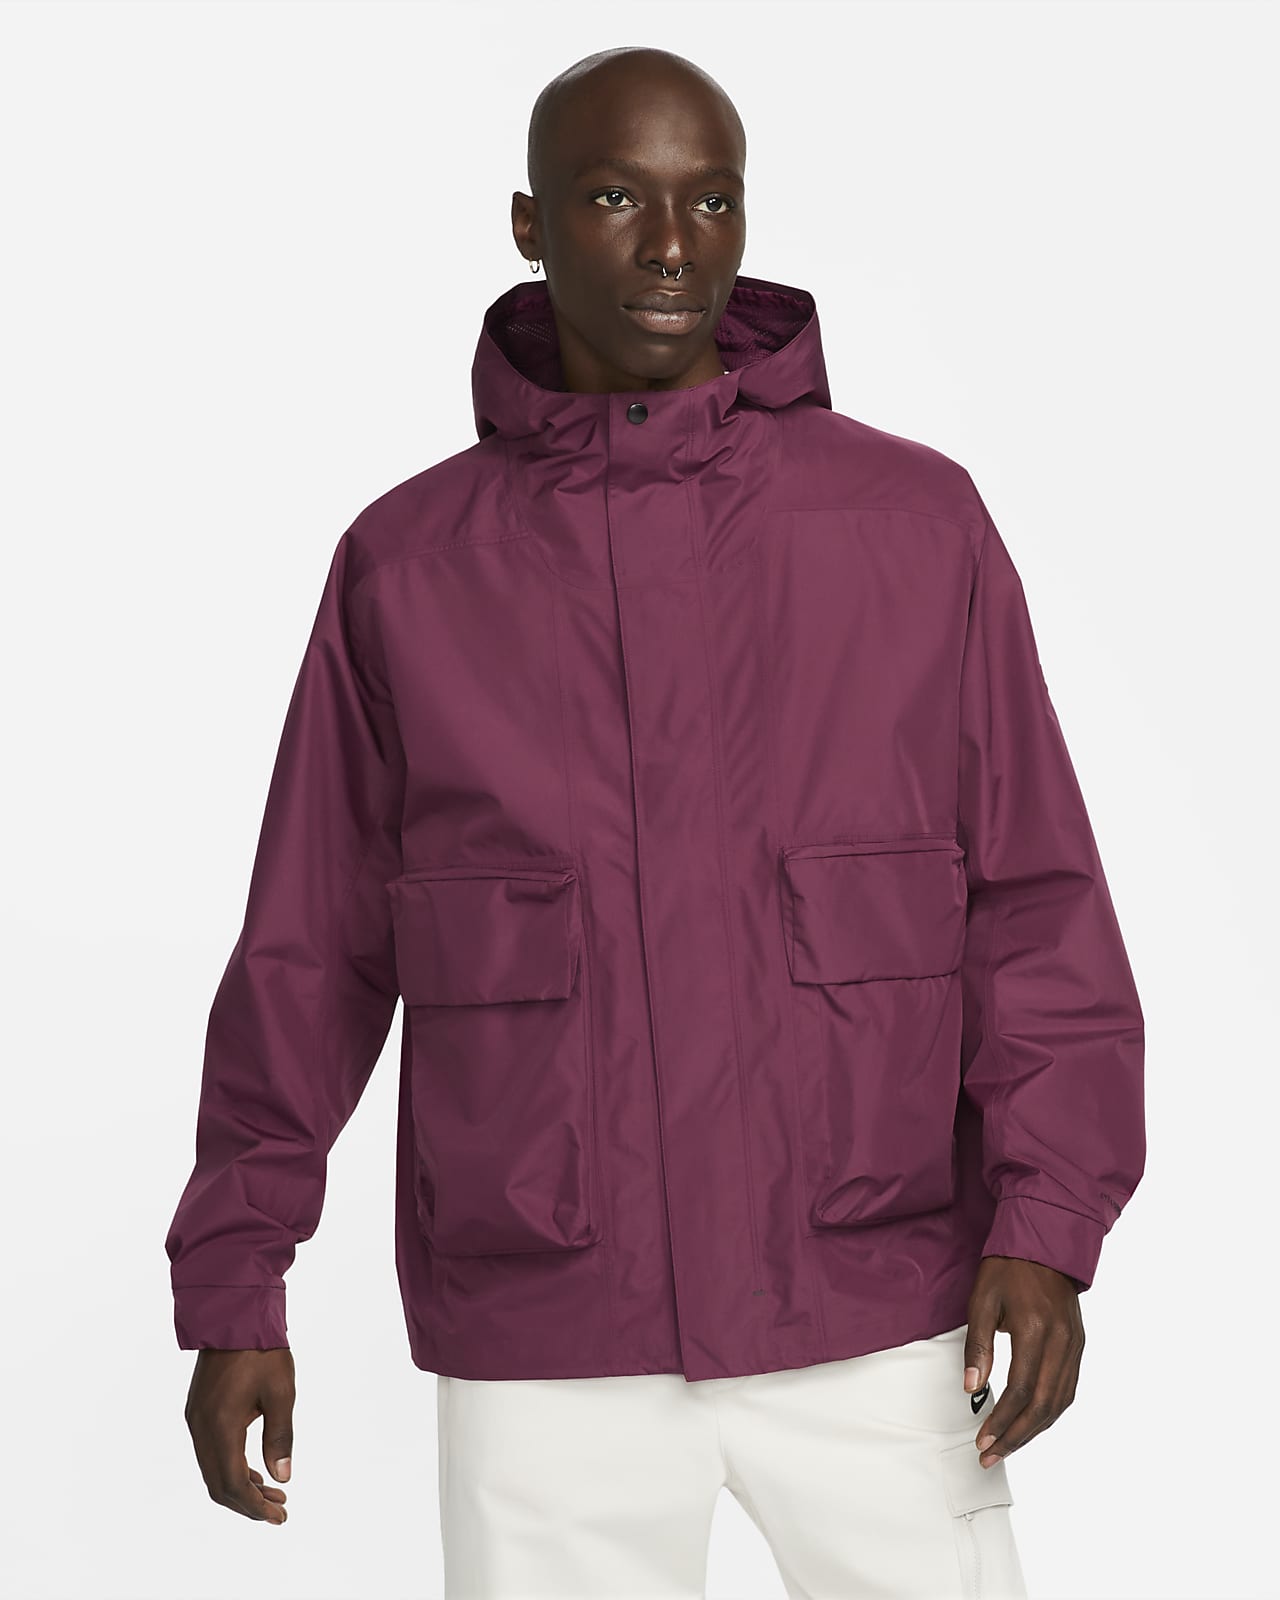 Nike Sportswear Storm-FIT ADV Tech Pack GORE-TEX Men's Hooded Jacket. Nike